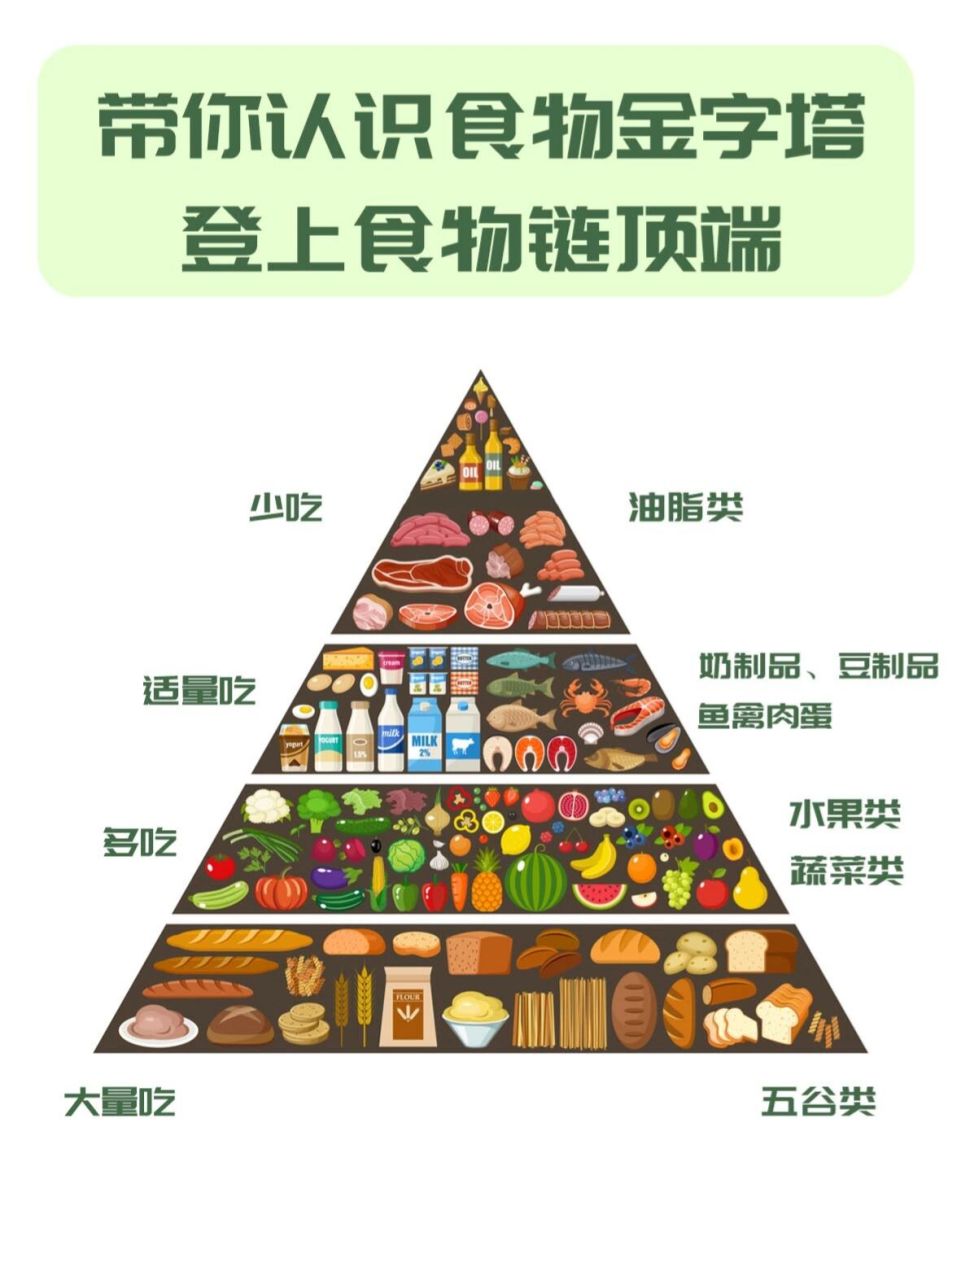 带你认识食物金字塔 登上食物链顶端 食物金字塔是营养学家为了帮助